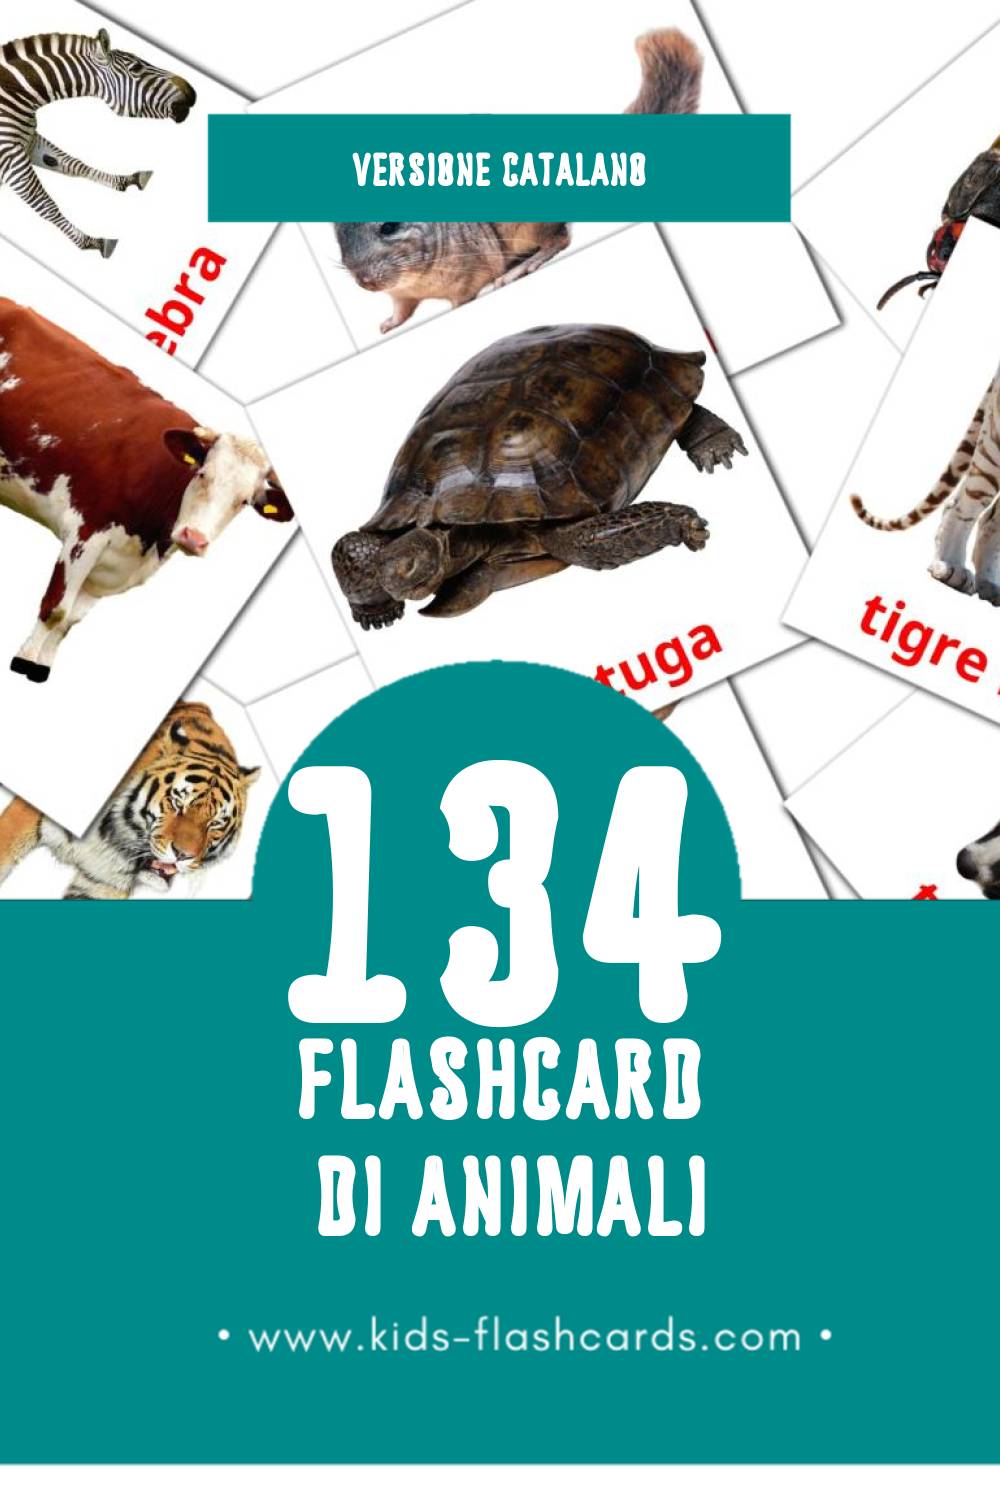 Schede visive sugli Animals per bambini (134 schede in Catalano)